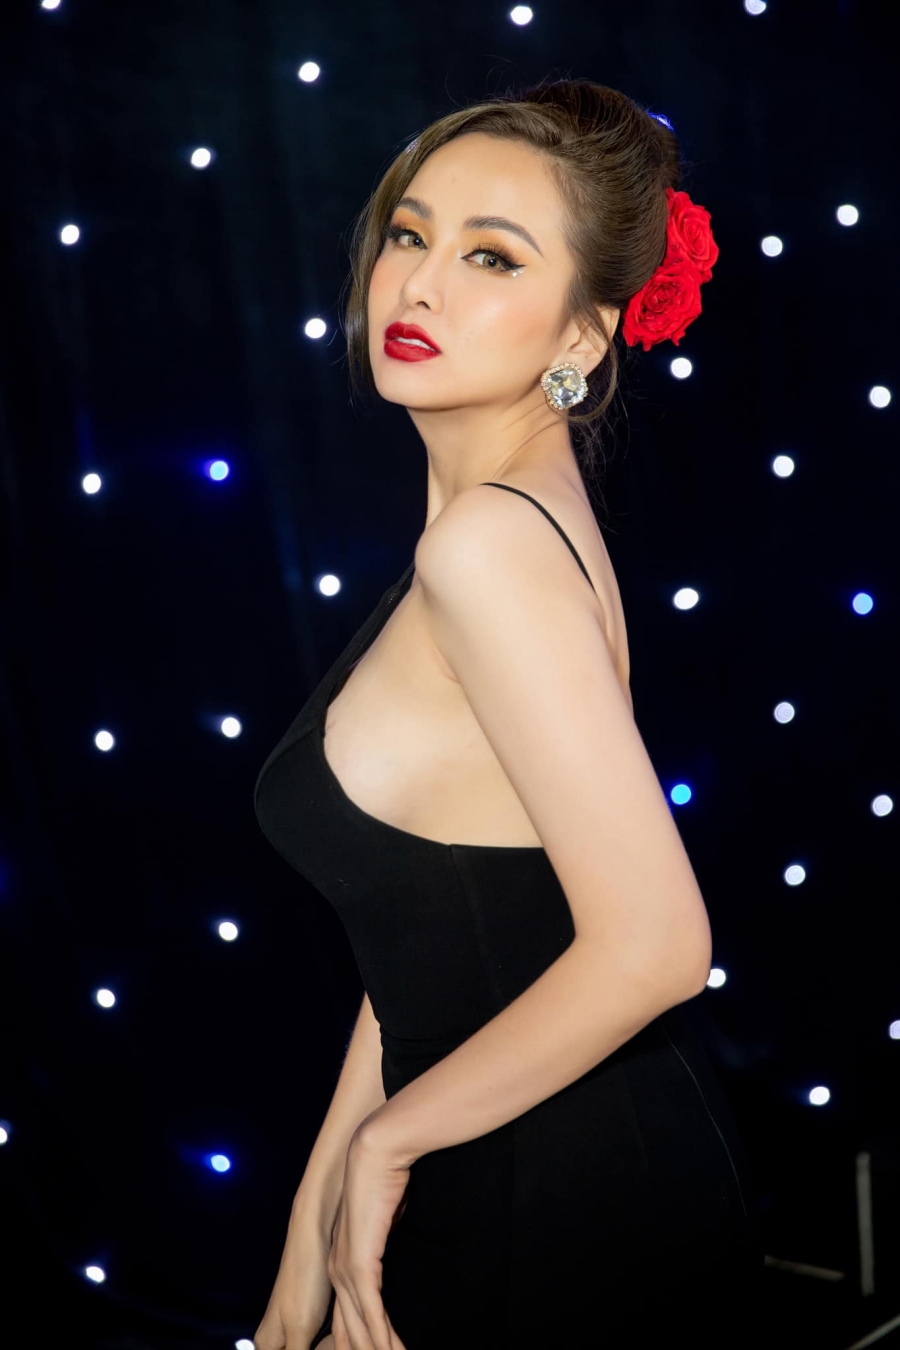 Hoa hậu Diễm Hương: Xinh đẹp có thừa nhưng đường tình nhiều sóng gió, lắm thị phi - Ảnh 2